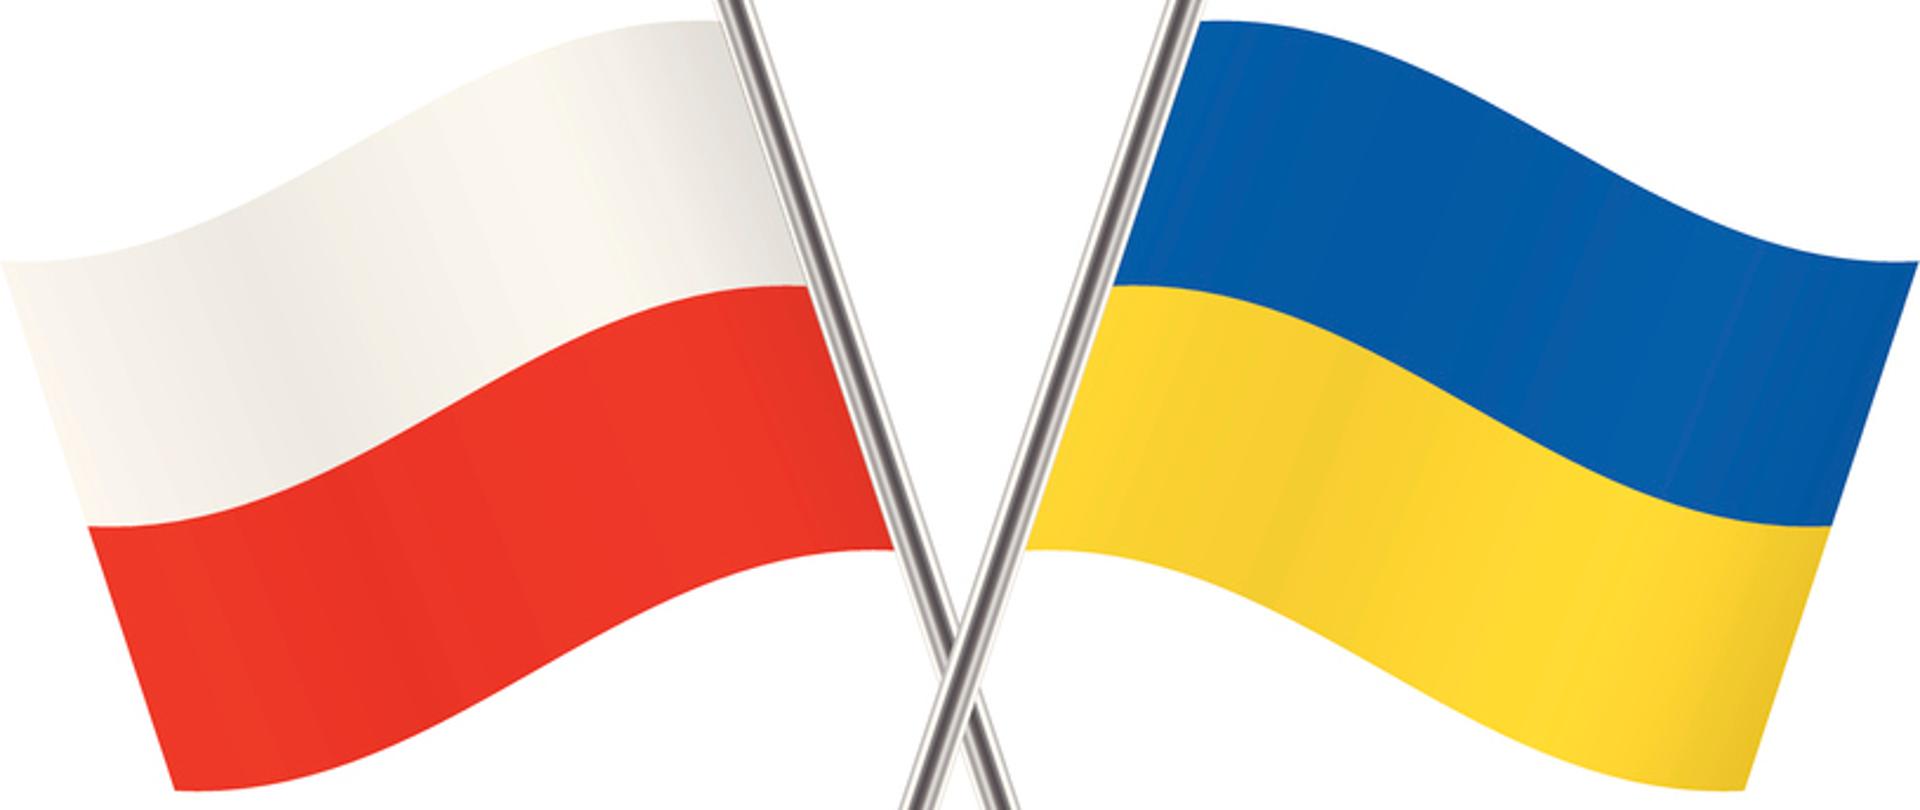 Dwie flagi Polski (biało-czerwona) i Ukrainy (niebiesko-żółta) na białym tle.
